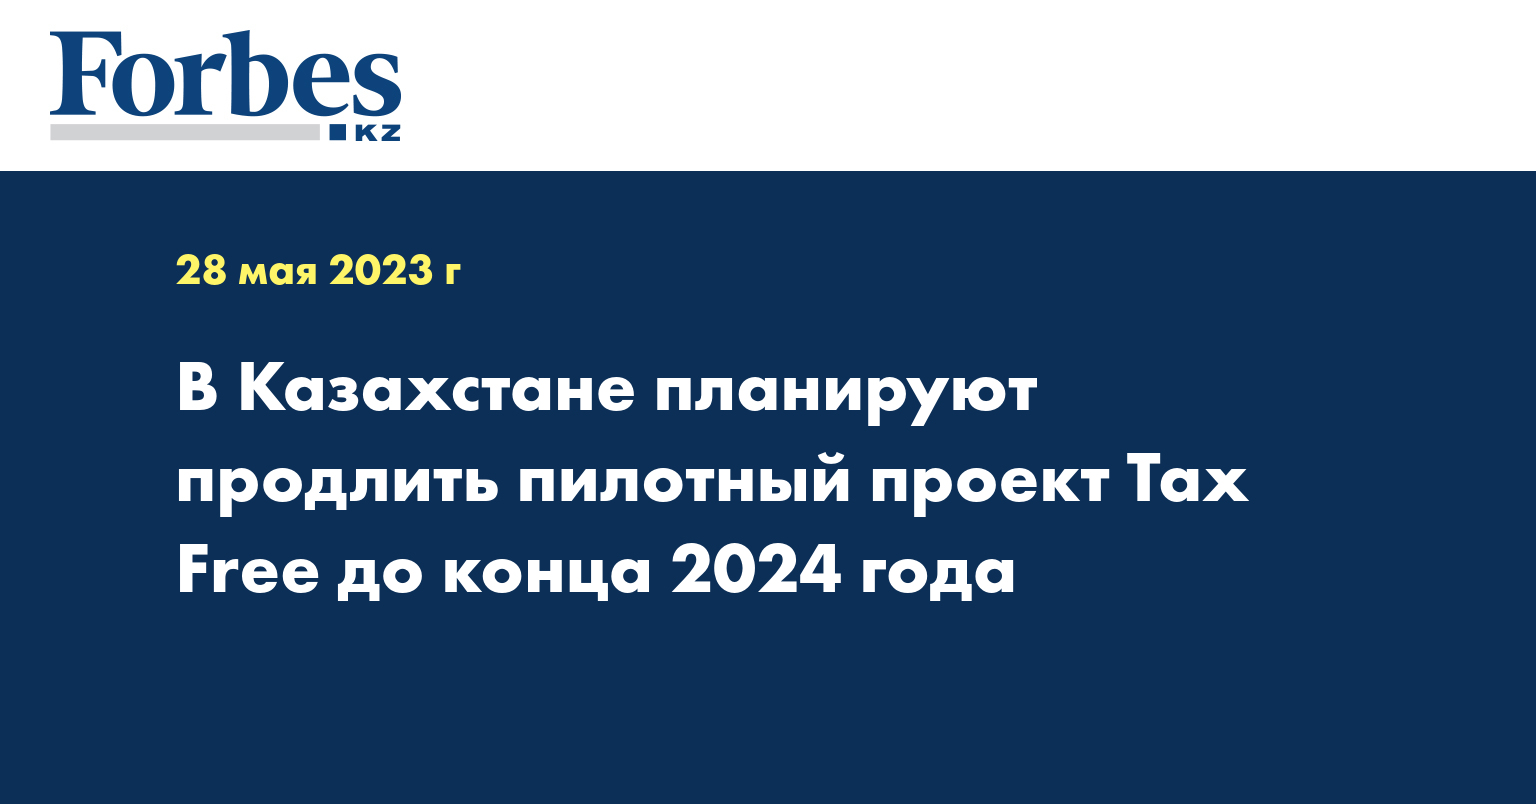  В Казахстане планируют продлить пилотный проект Tax Free до конца 2024 года